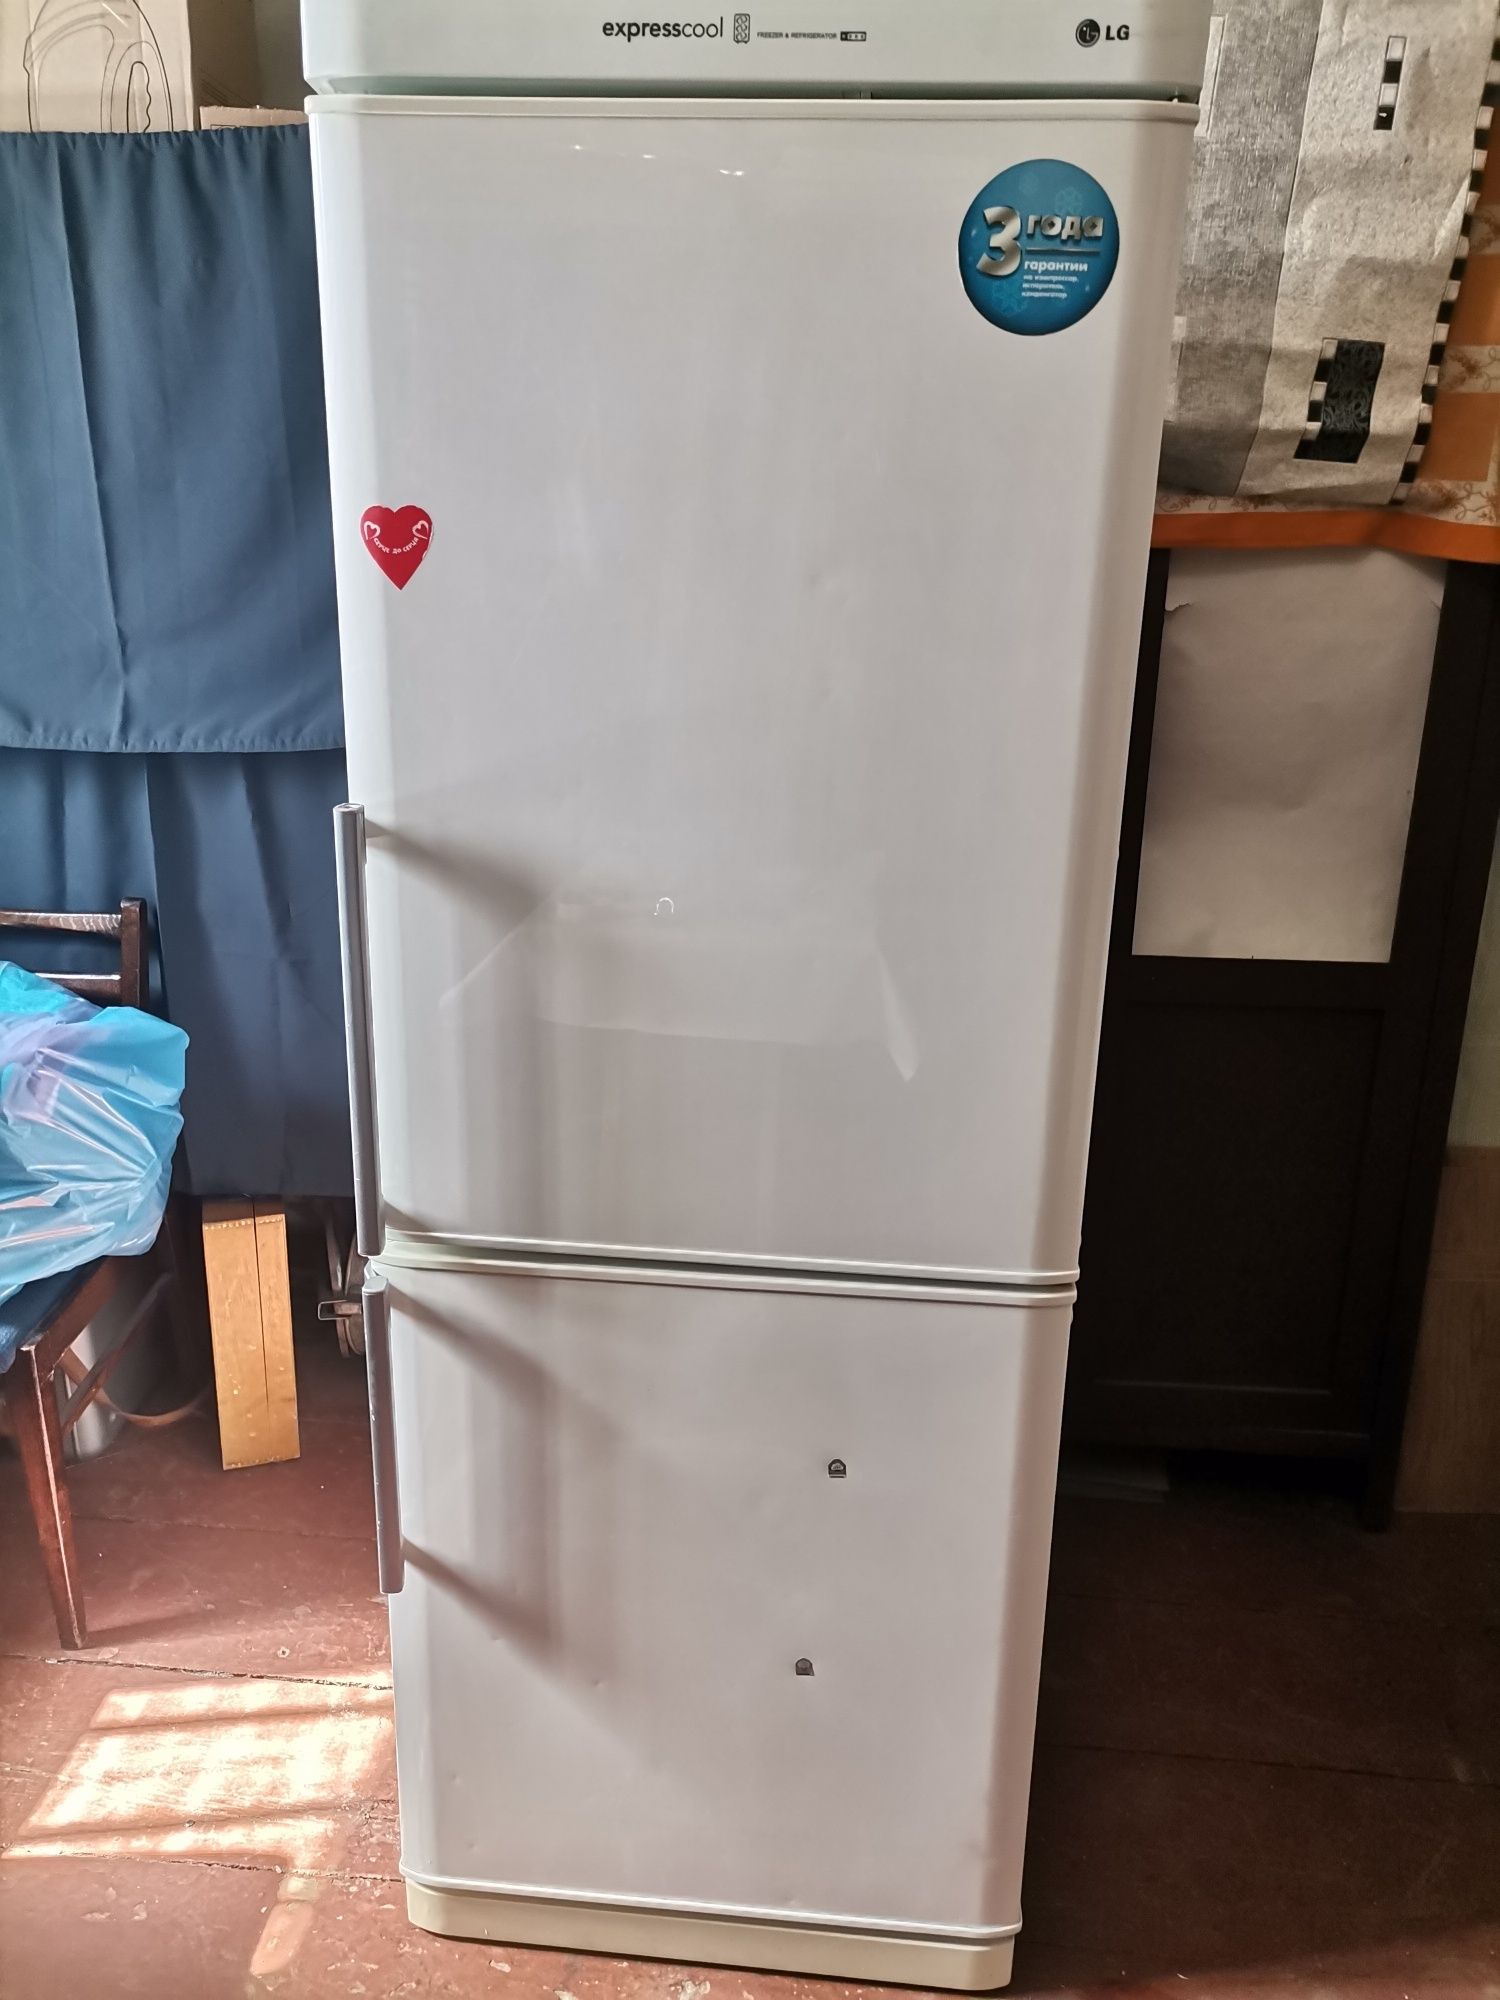 Продам холодильник  LG  Express cool.